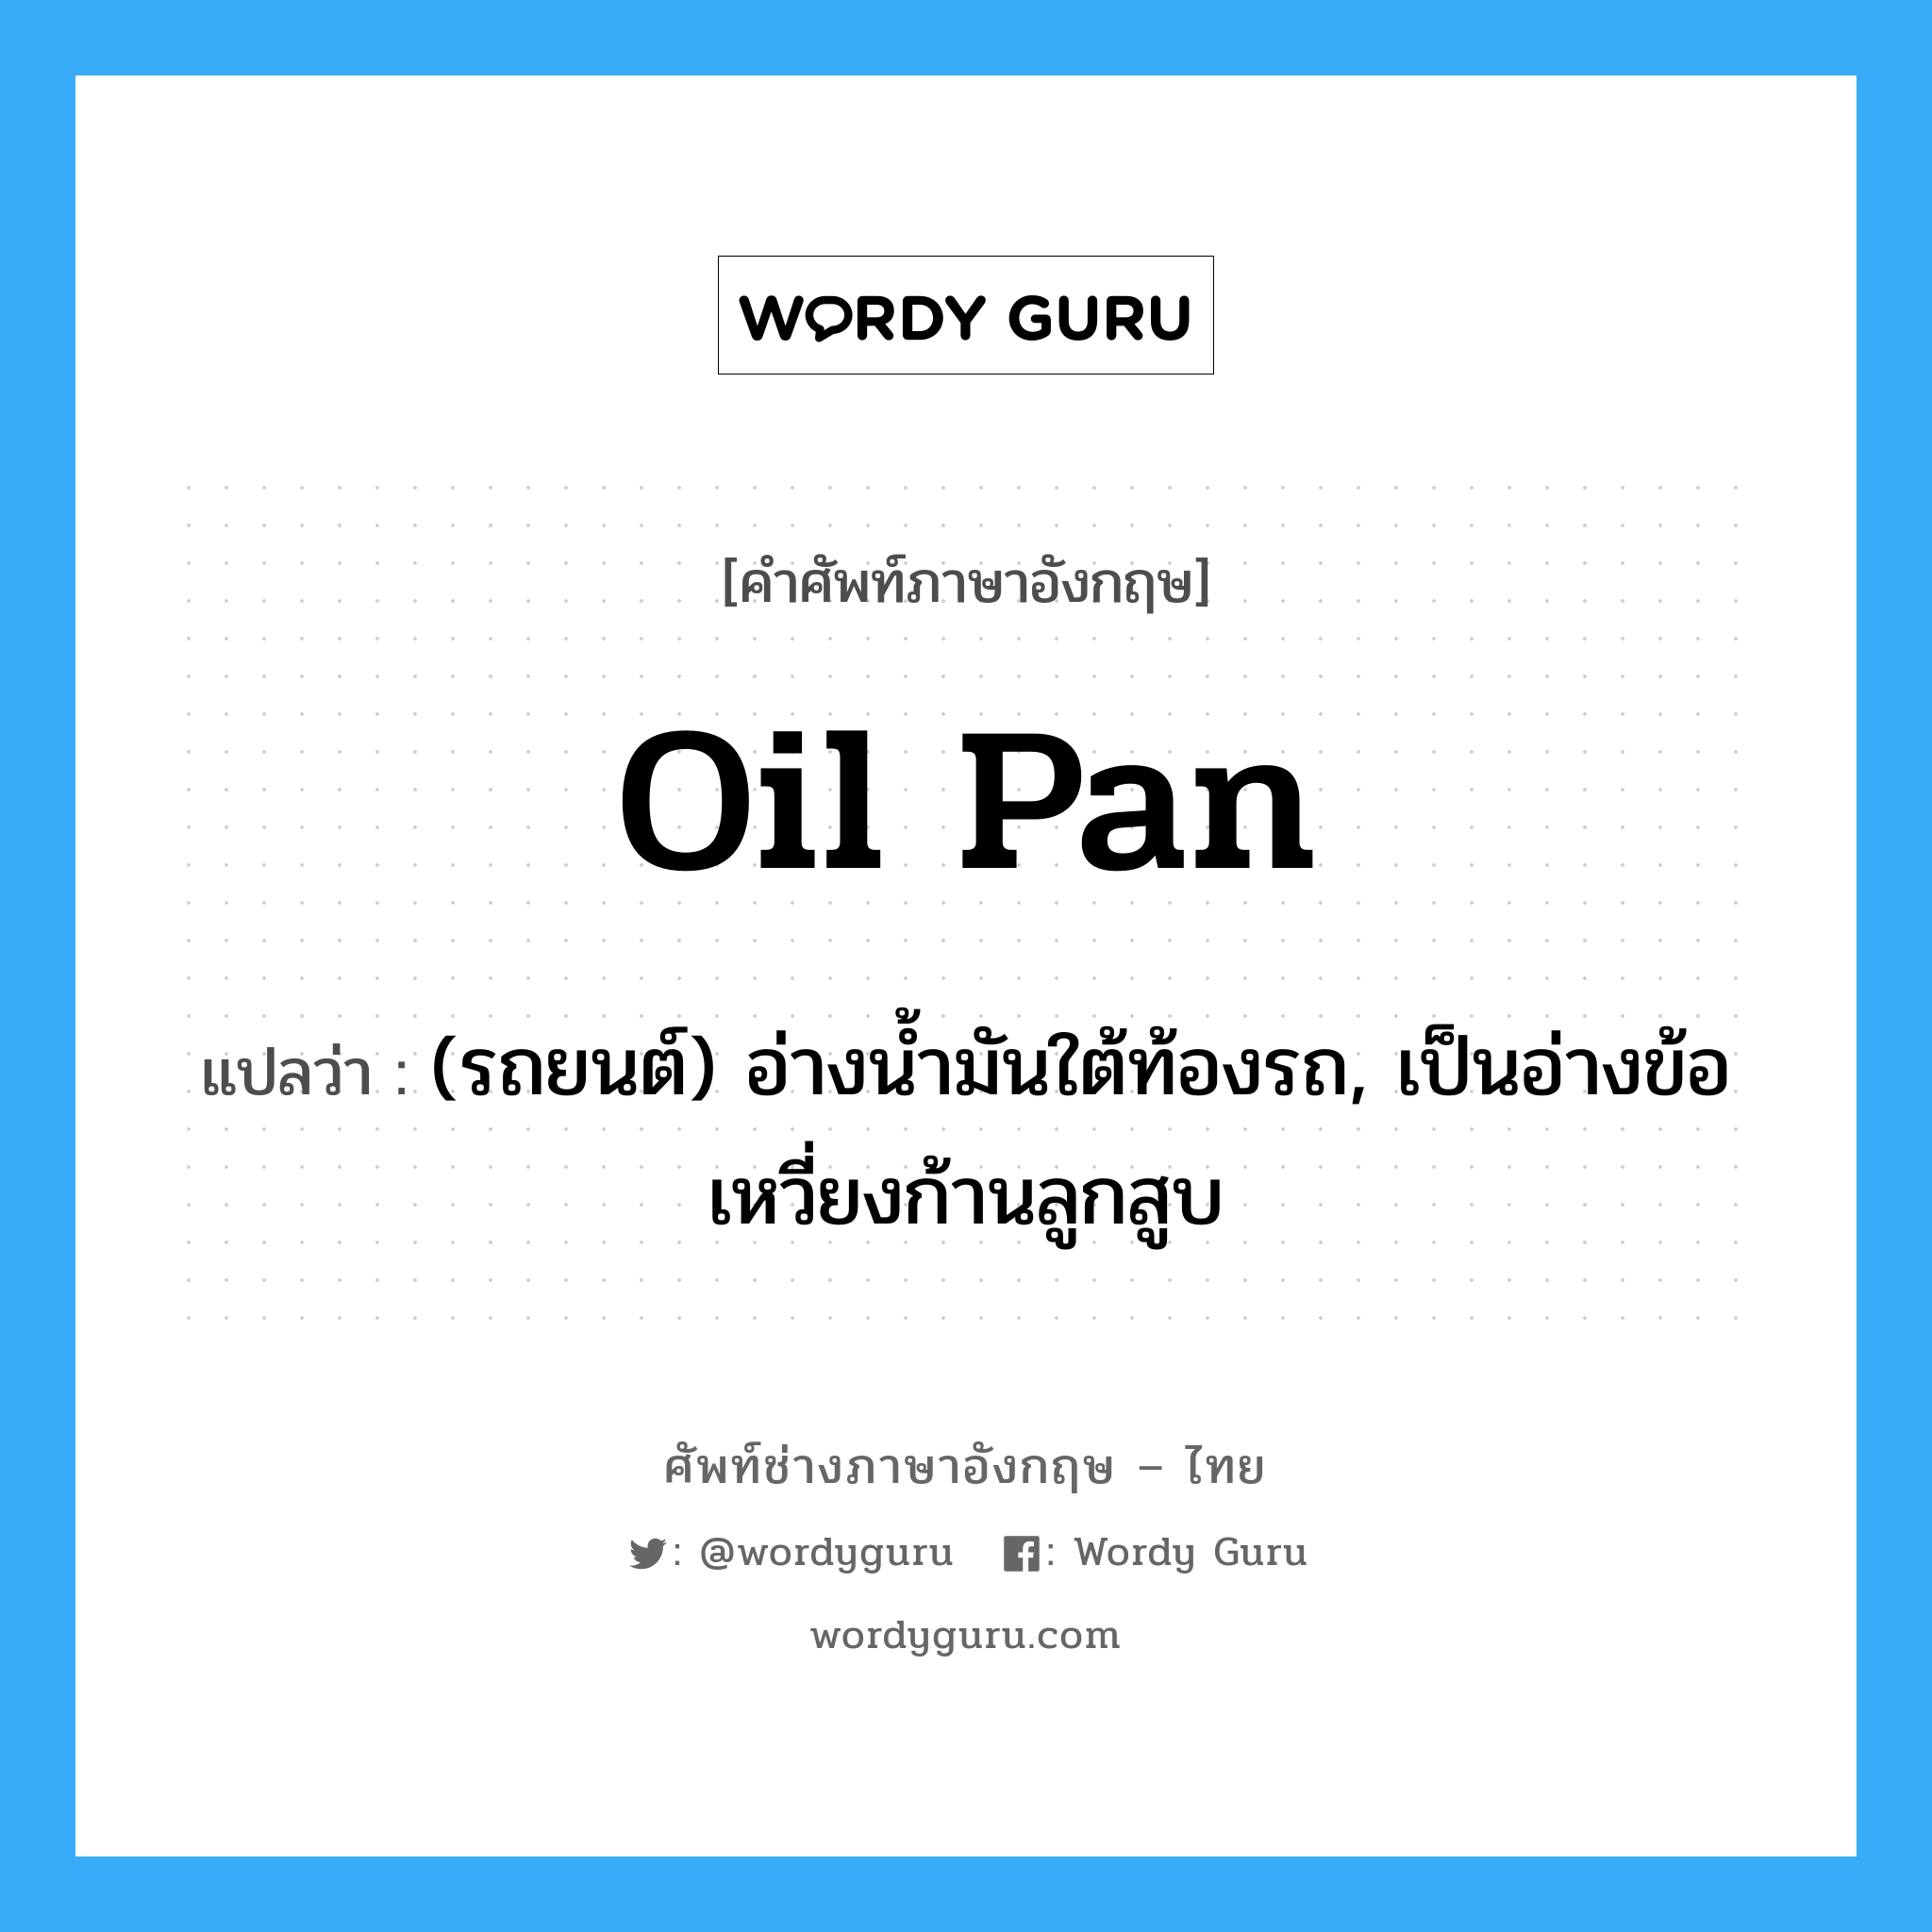 oil pan แปลว่า?, คำศัพท์ช่างภาษาอังกฤษ - ไทย oil pan คำศัพท์ภาษาอังกฤษ oil pan แปลว่า (รถยนต์) อ่างน้ำมันใต้ท้องรถ, เป็นอ่างข้อเหวี่ยงก้านลูกสูบ